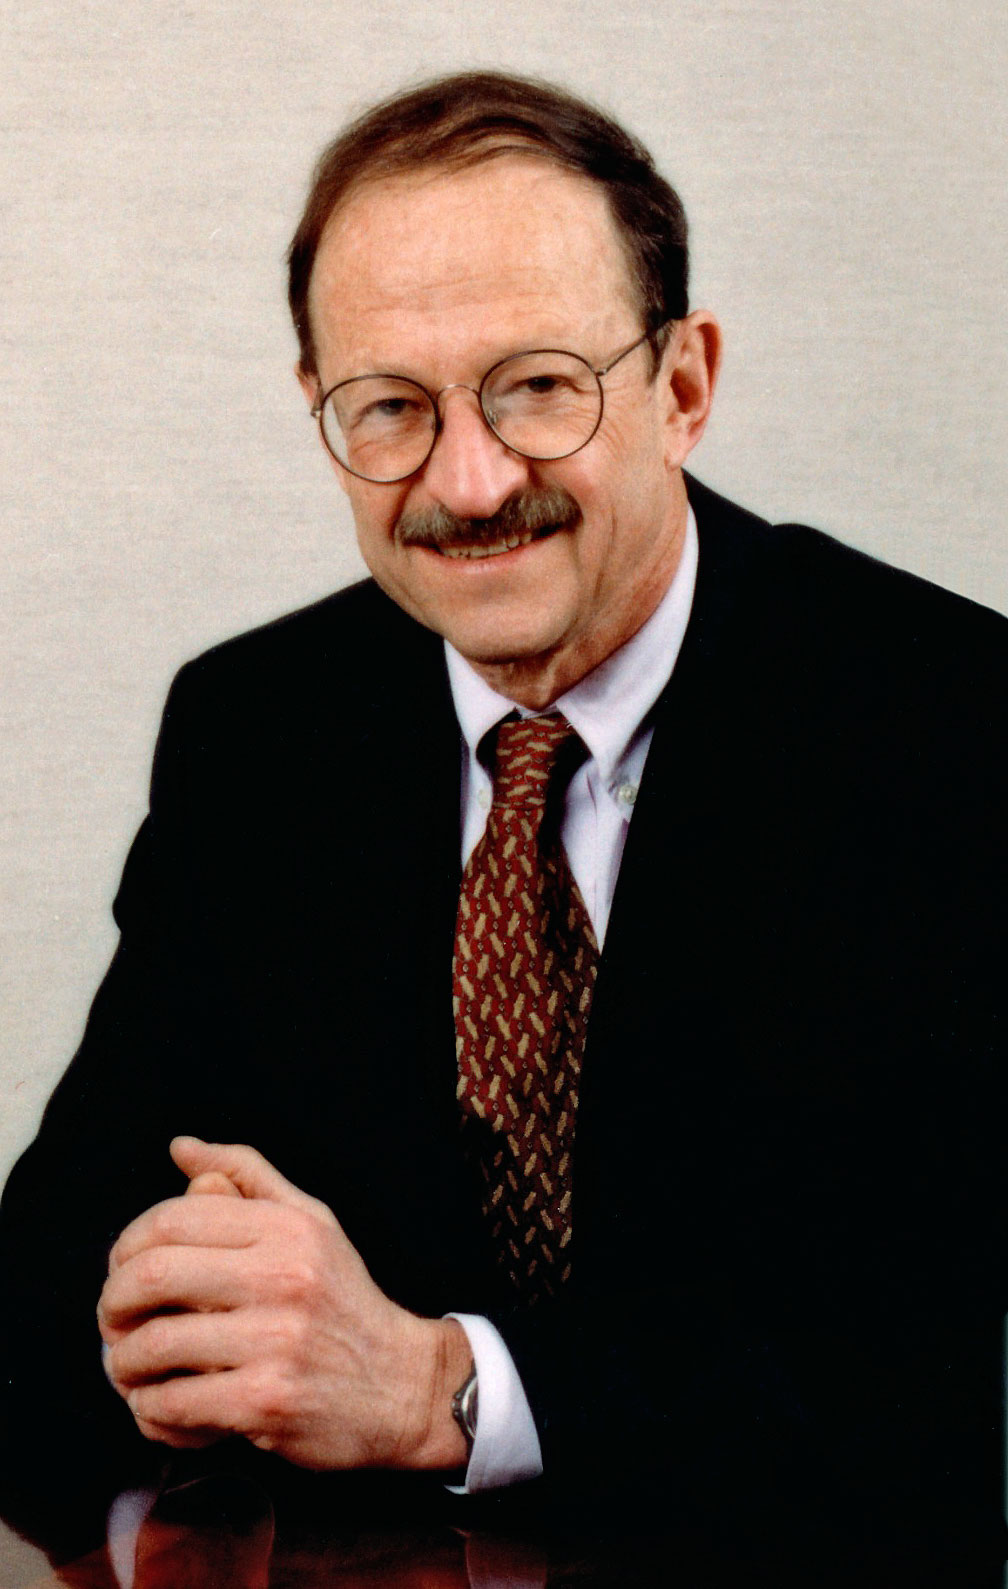 Dr. Harold Varmus